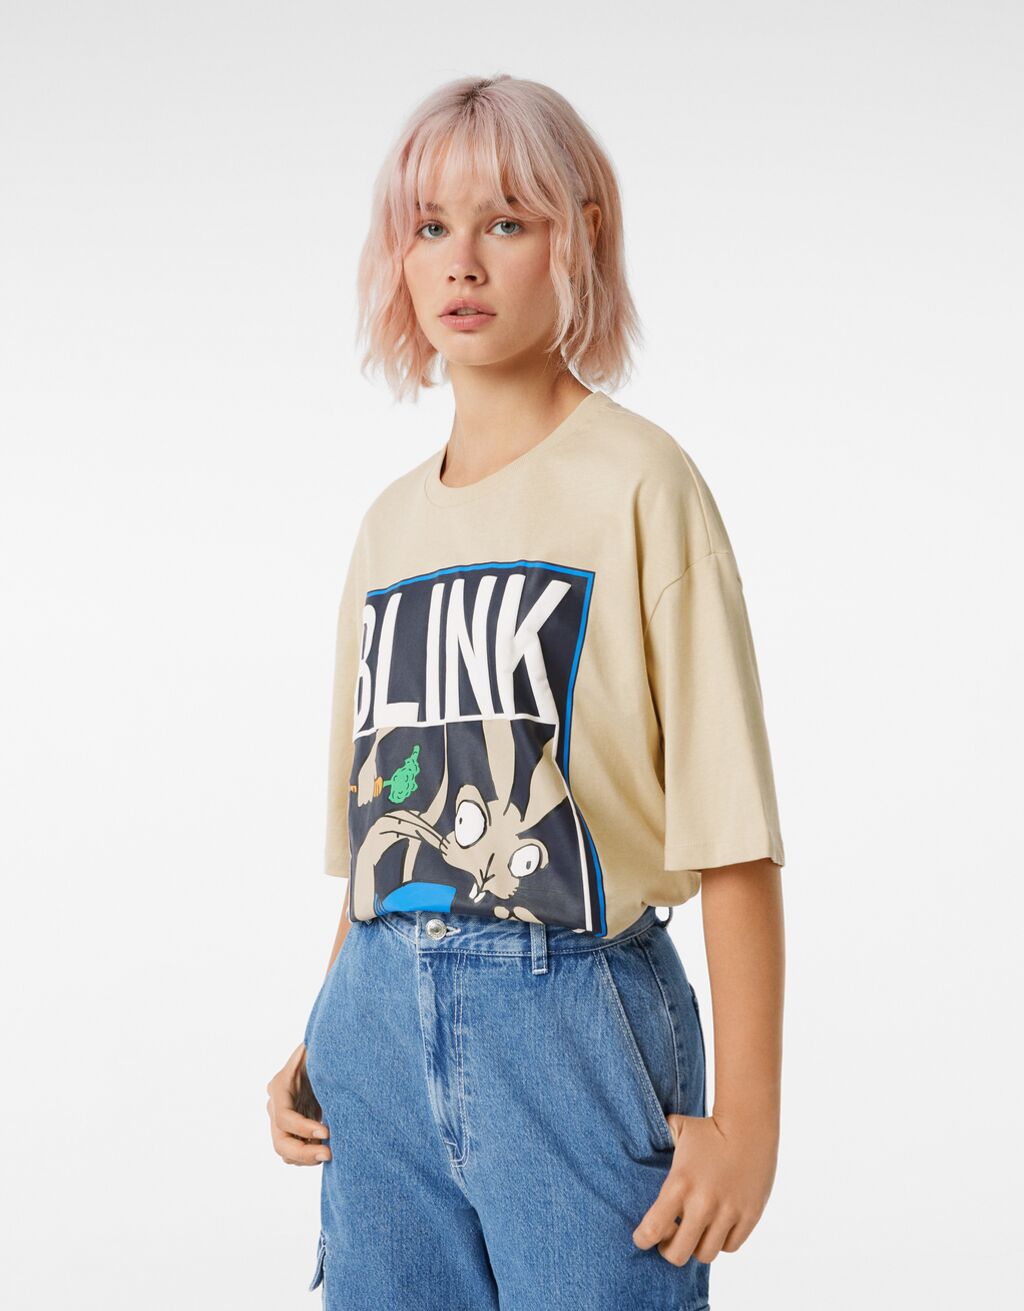 Κοντομάνικη μπλούζα oversize print Blink 182